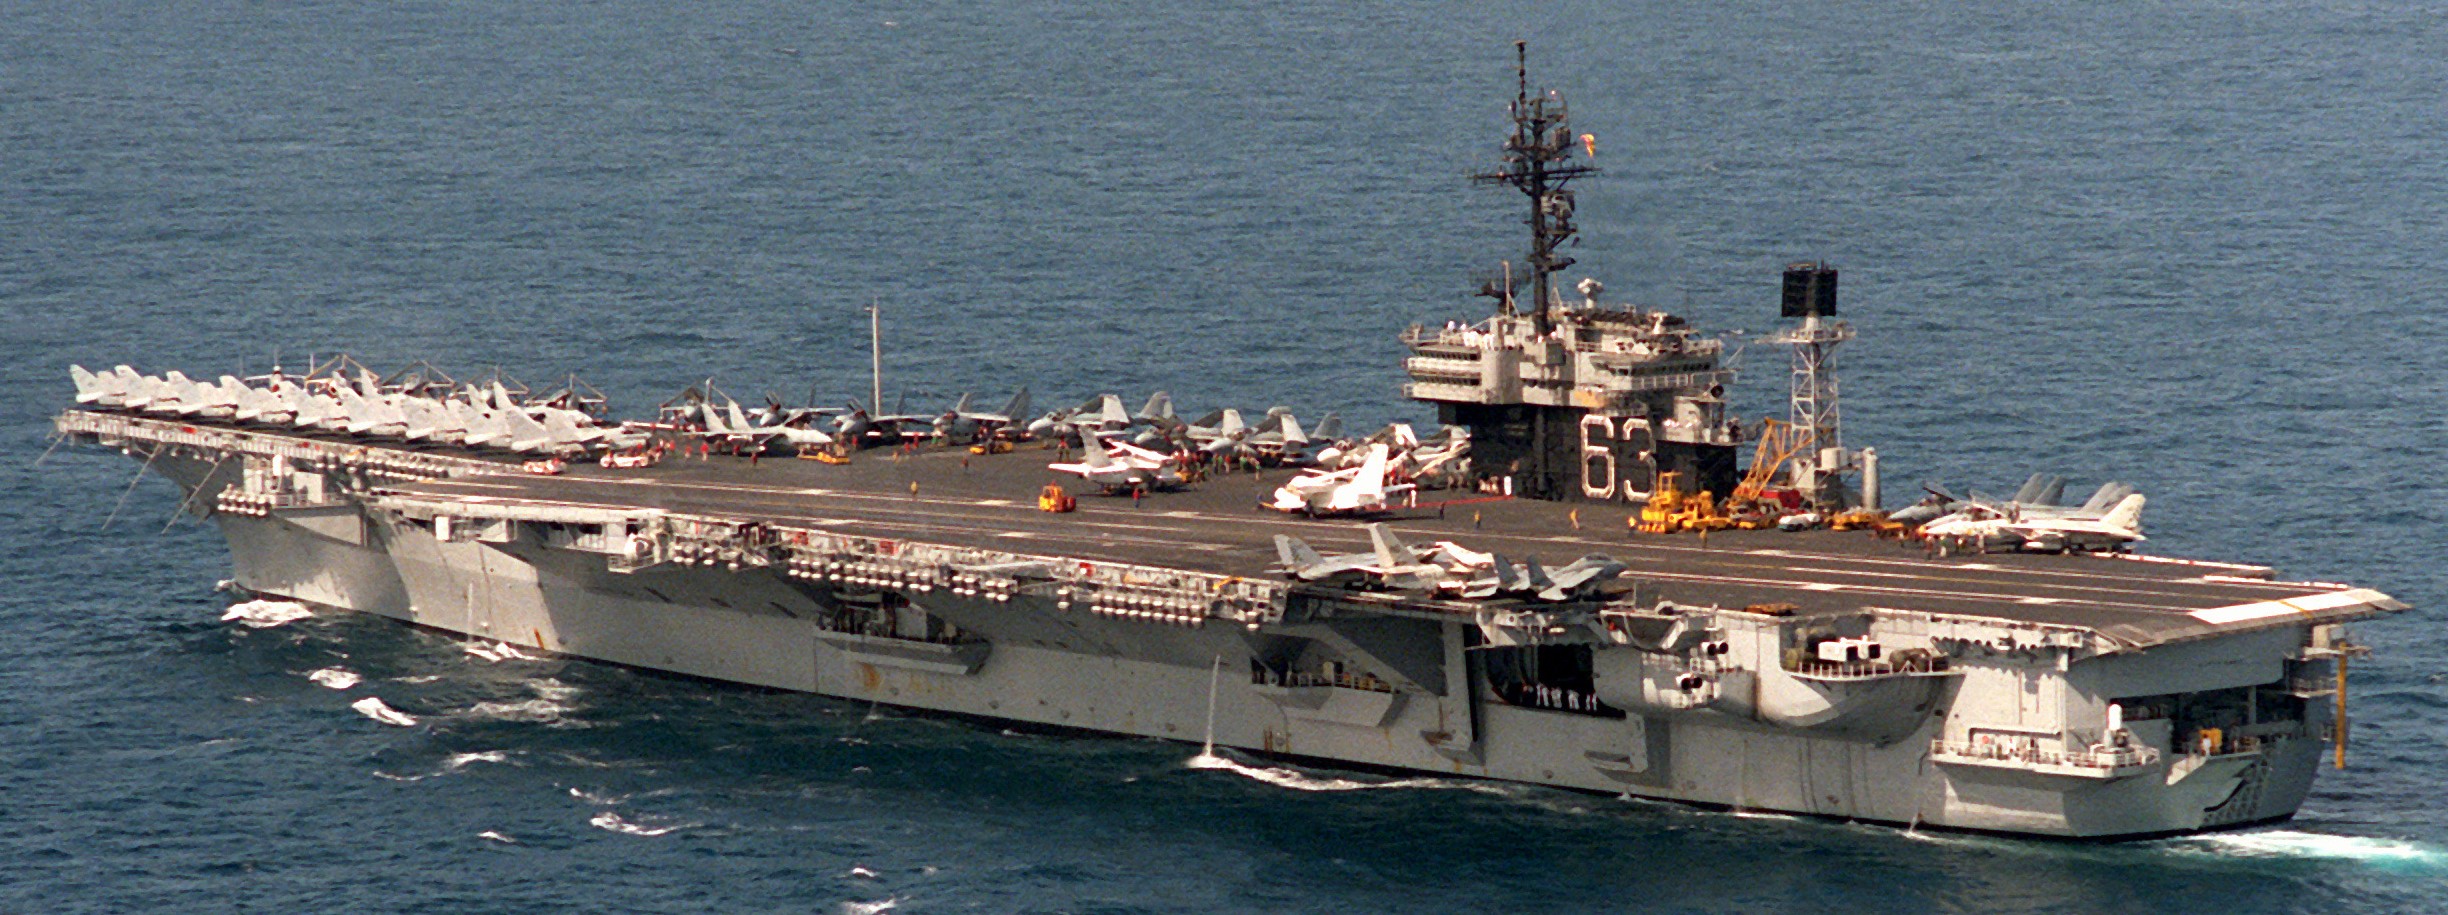 cv-63 uss kitty hawk aircraft carrier air wing cvw-9 us navy 446